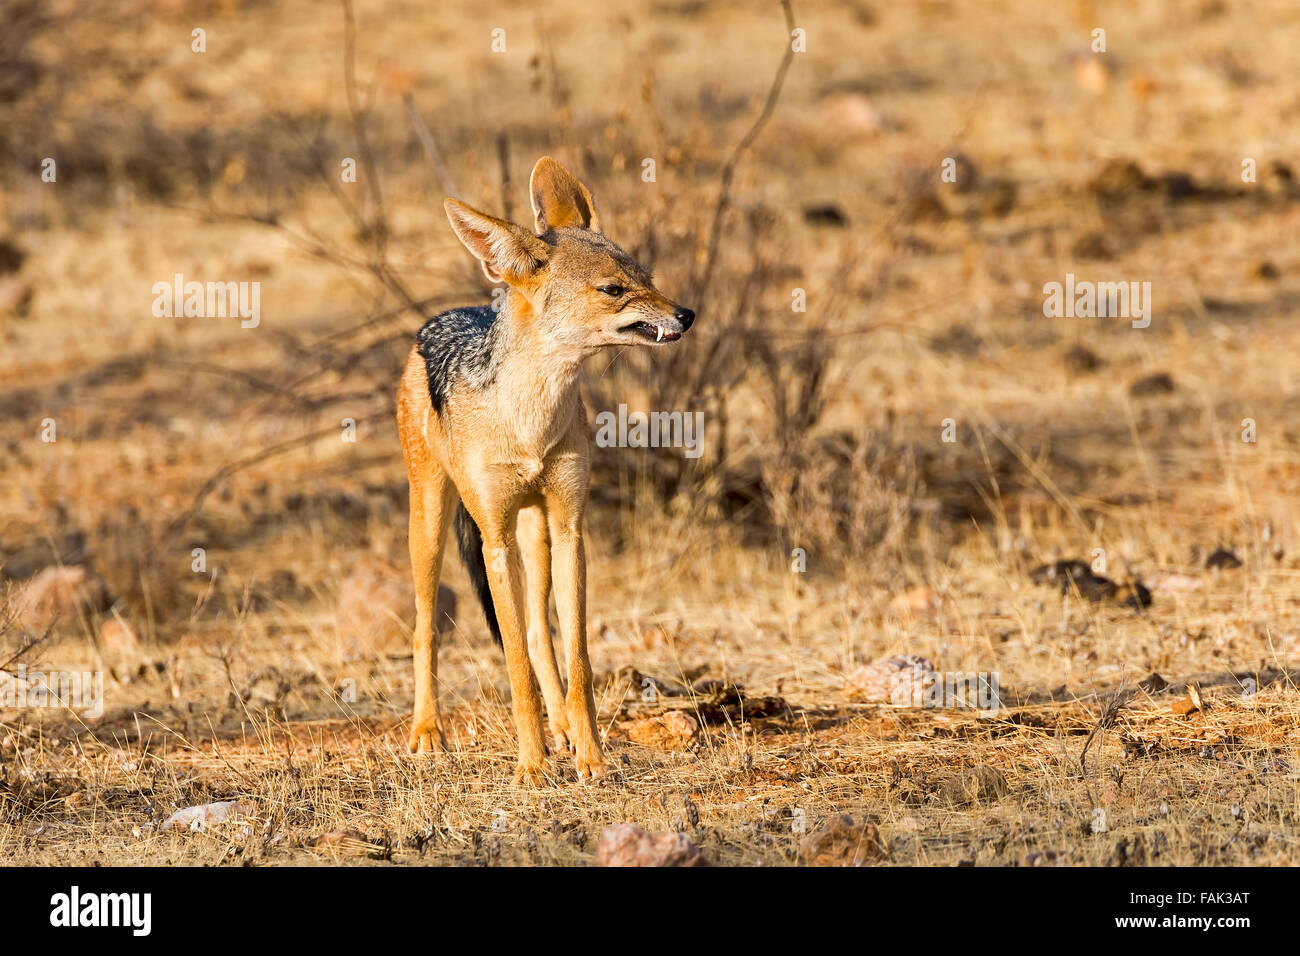 Le chacal à dos noir (Canis mesomelas) snarling, Samburu National Reserve, Kenya Banque D'Images